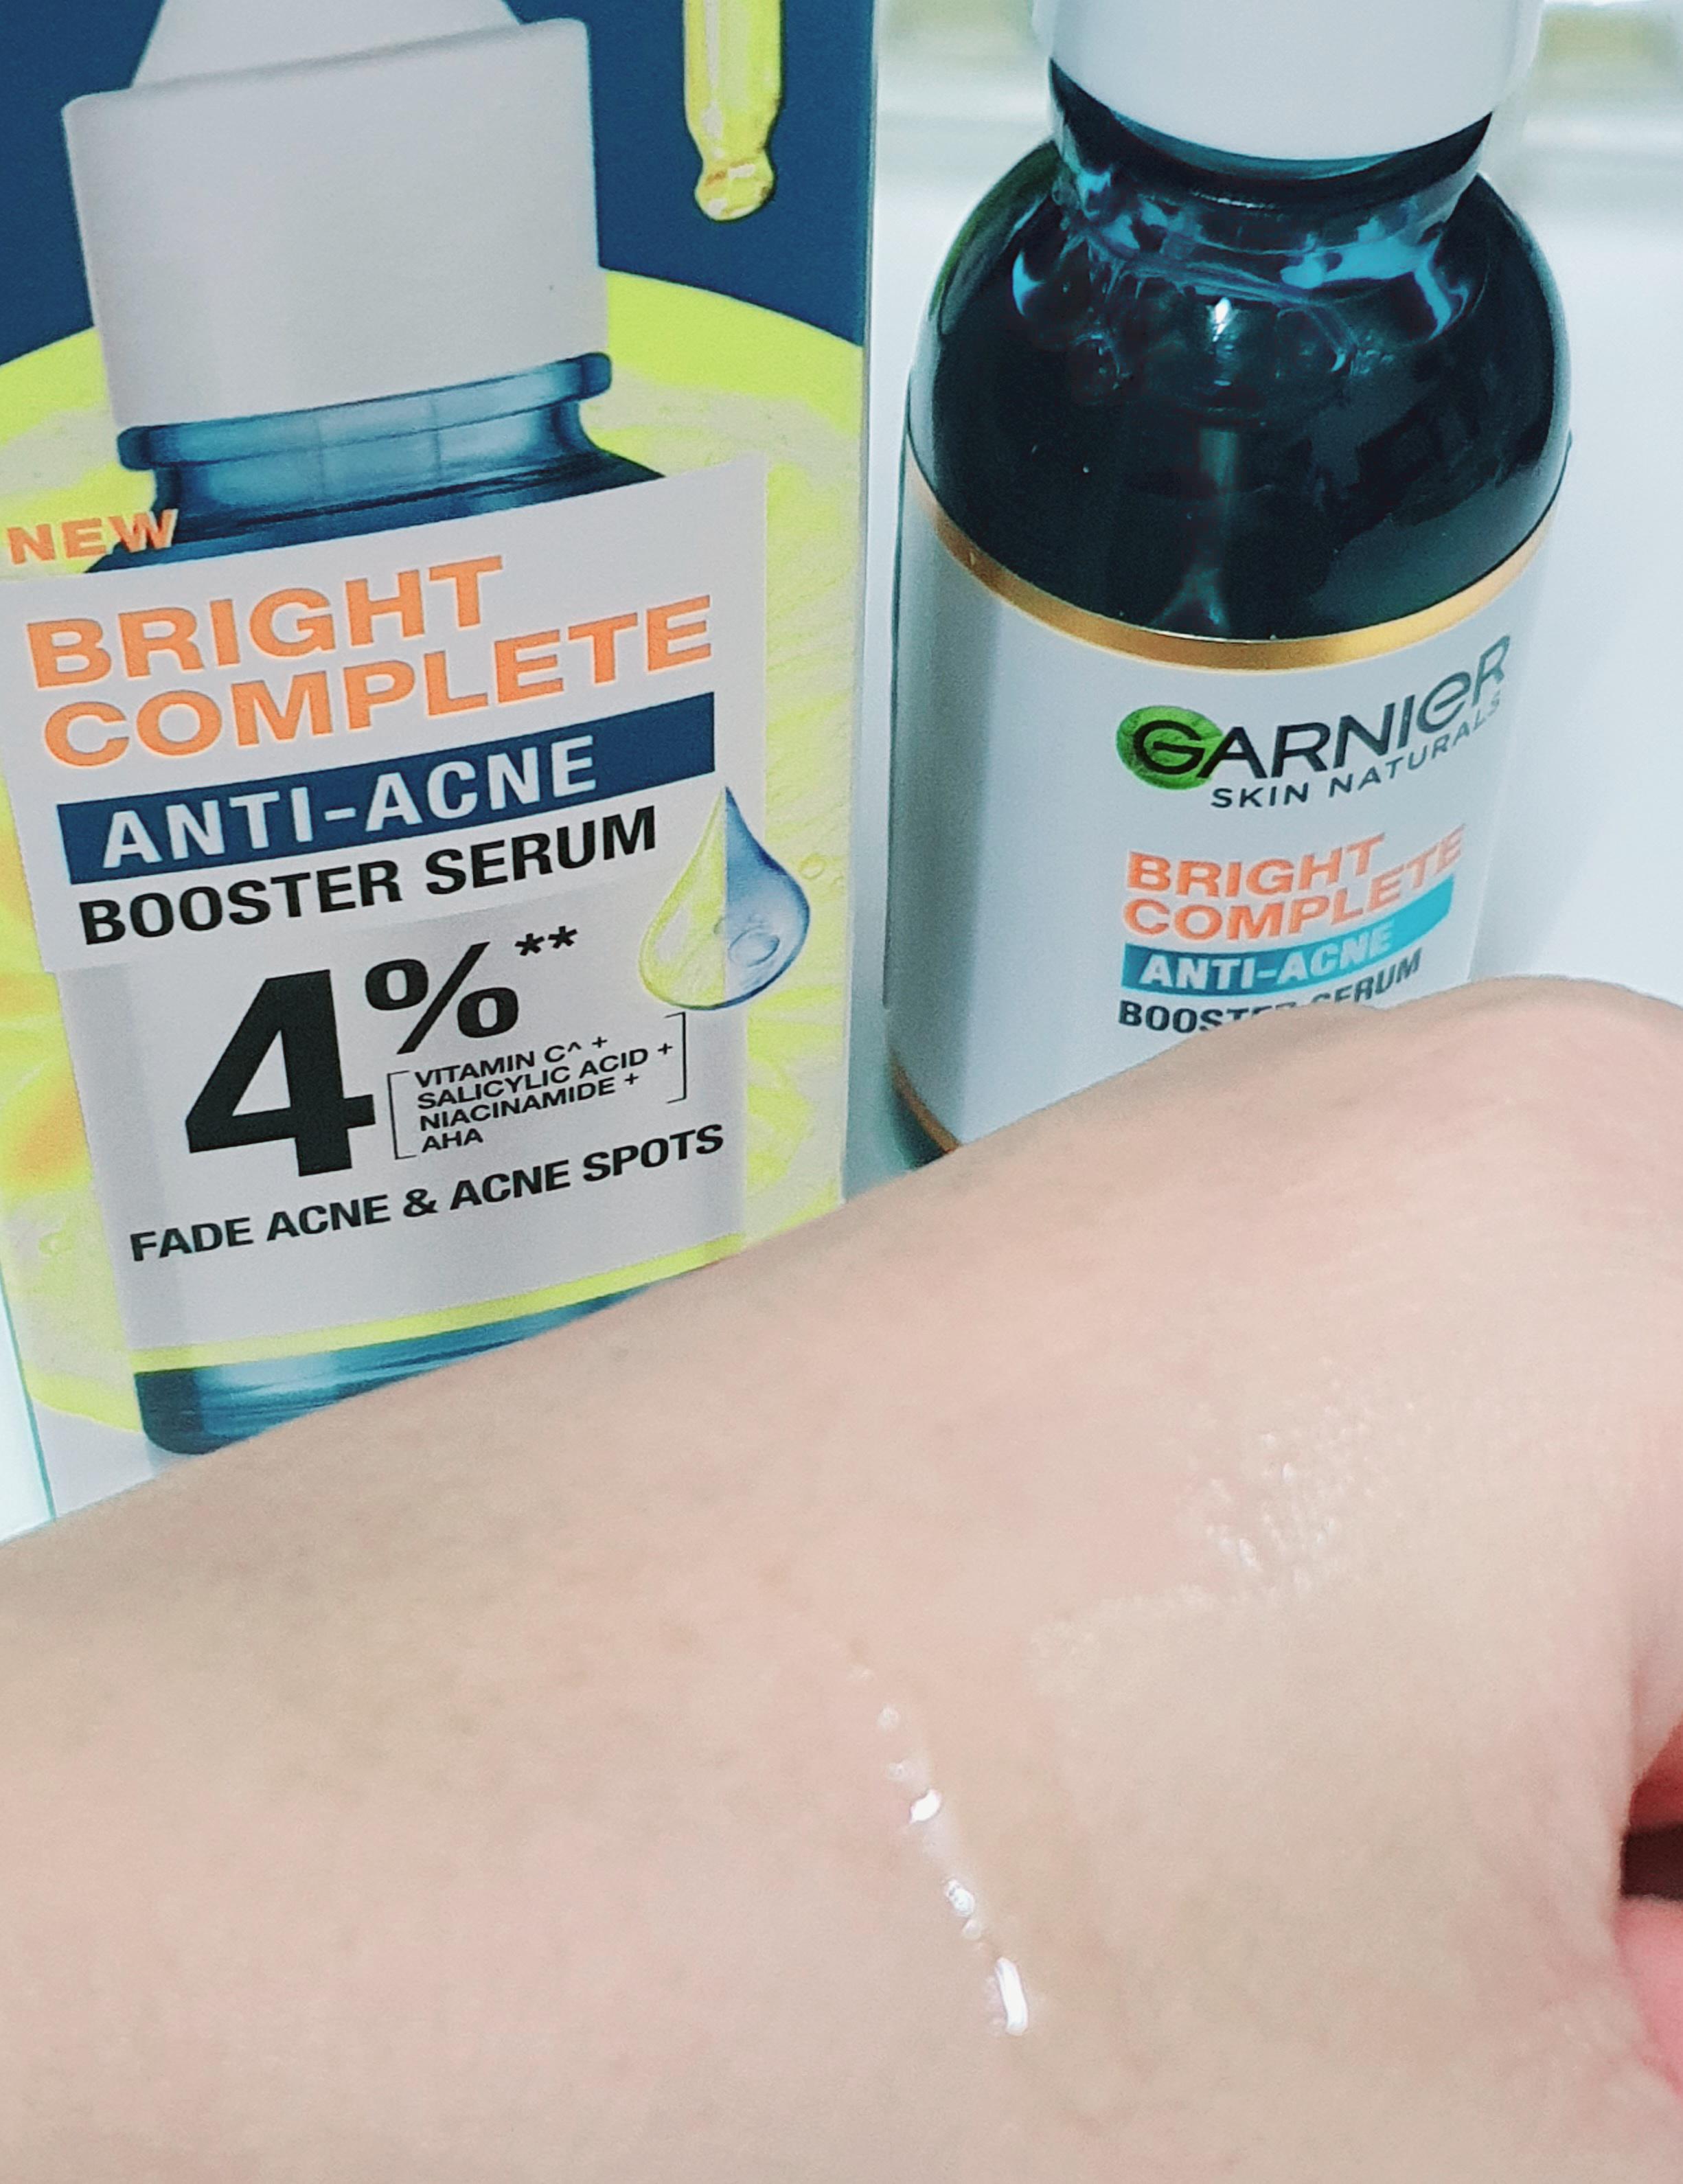 ภาพหน้าปก ไอเทมที่ไม่ควรพลาด Garnier Bright Complete Anti-Ance Booster Serum & Garnier Bright Complete Anti Acne Serum Cream ที่:2